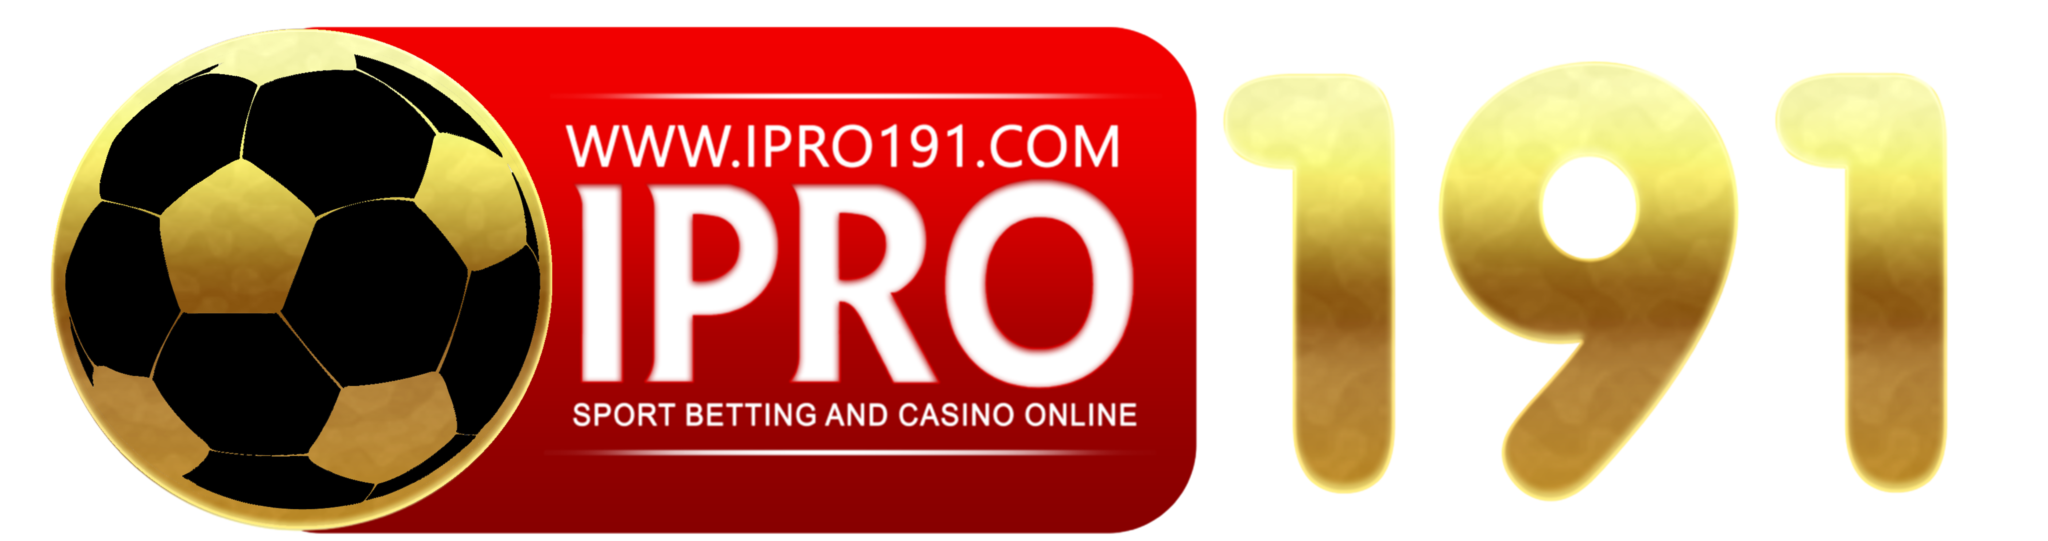 IPRO191 logo